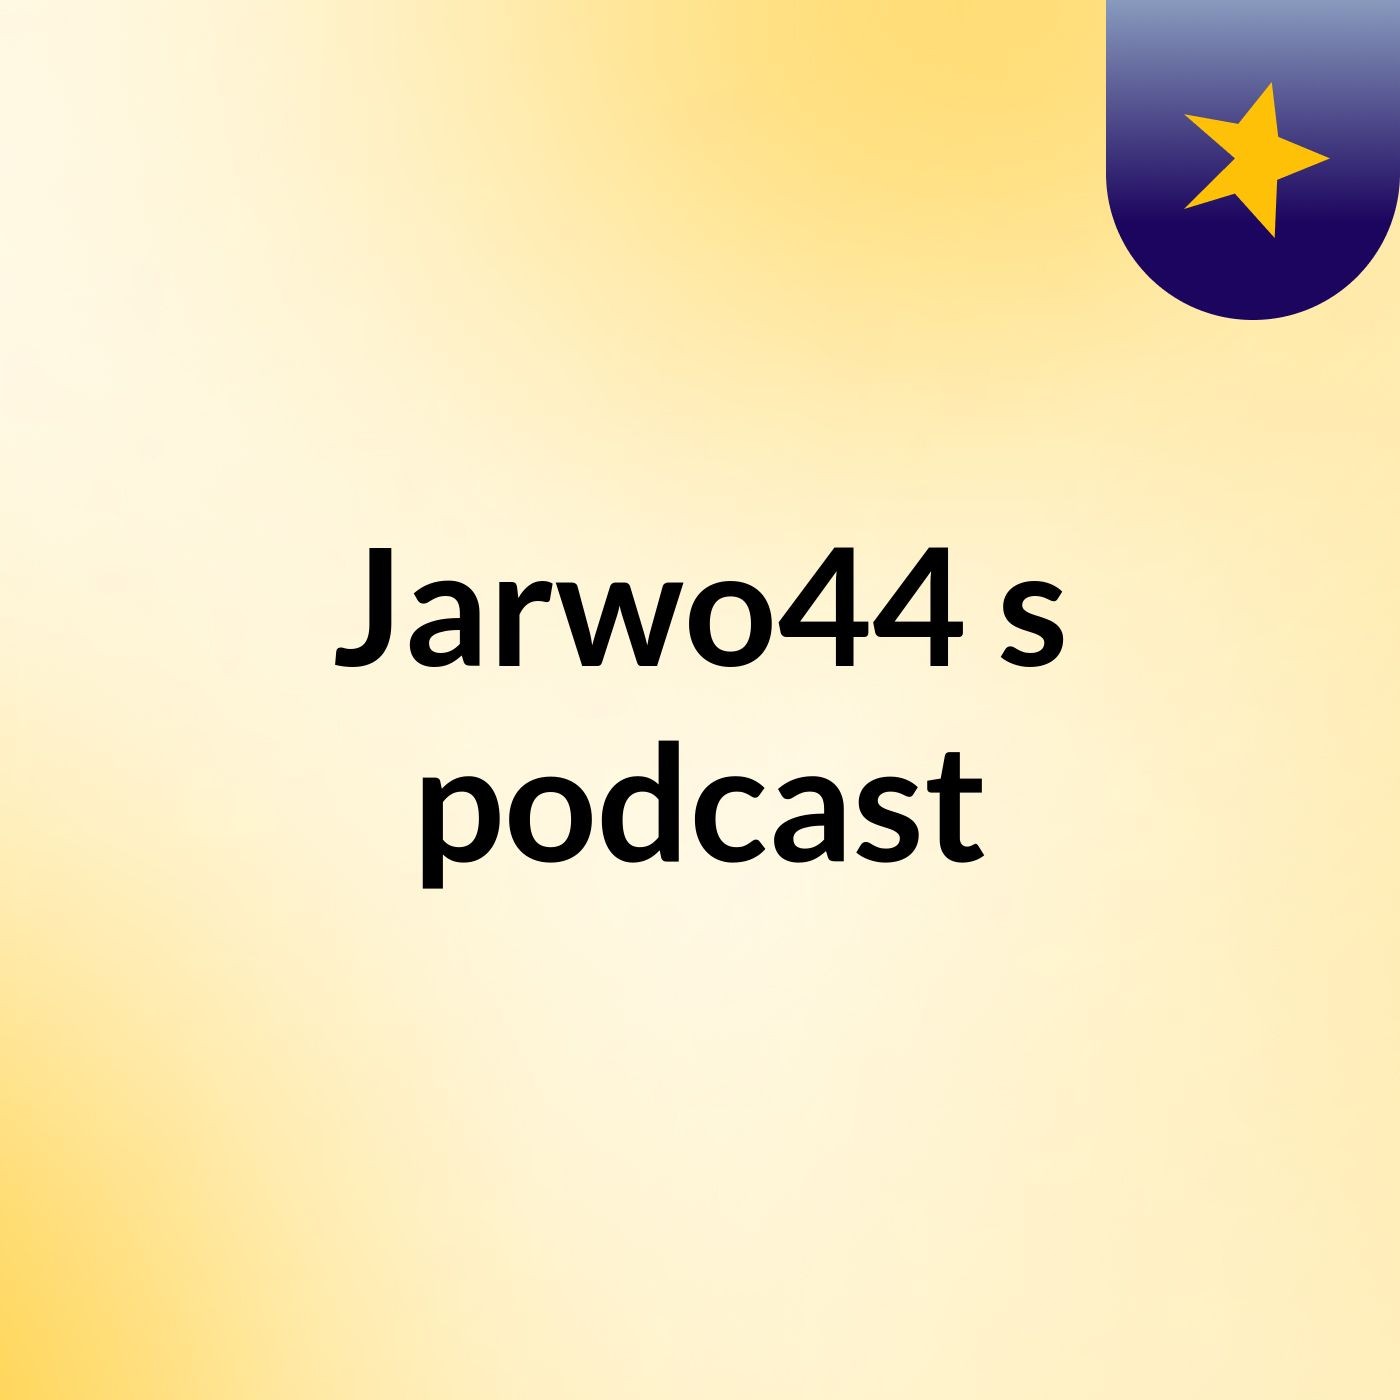 Episode 8 - Jarwo44's podcast